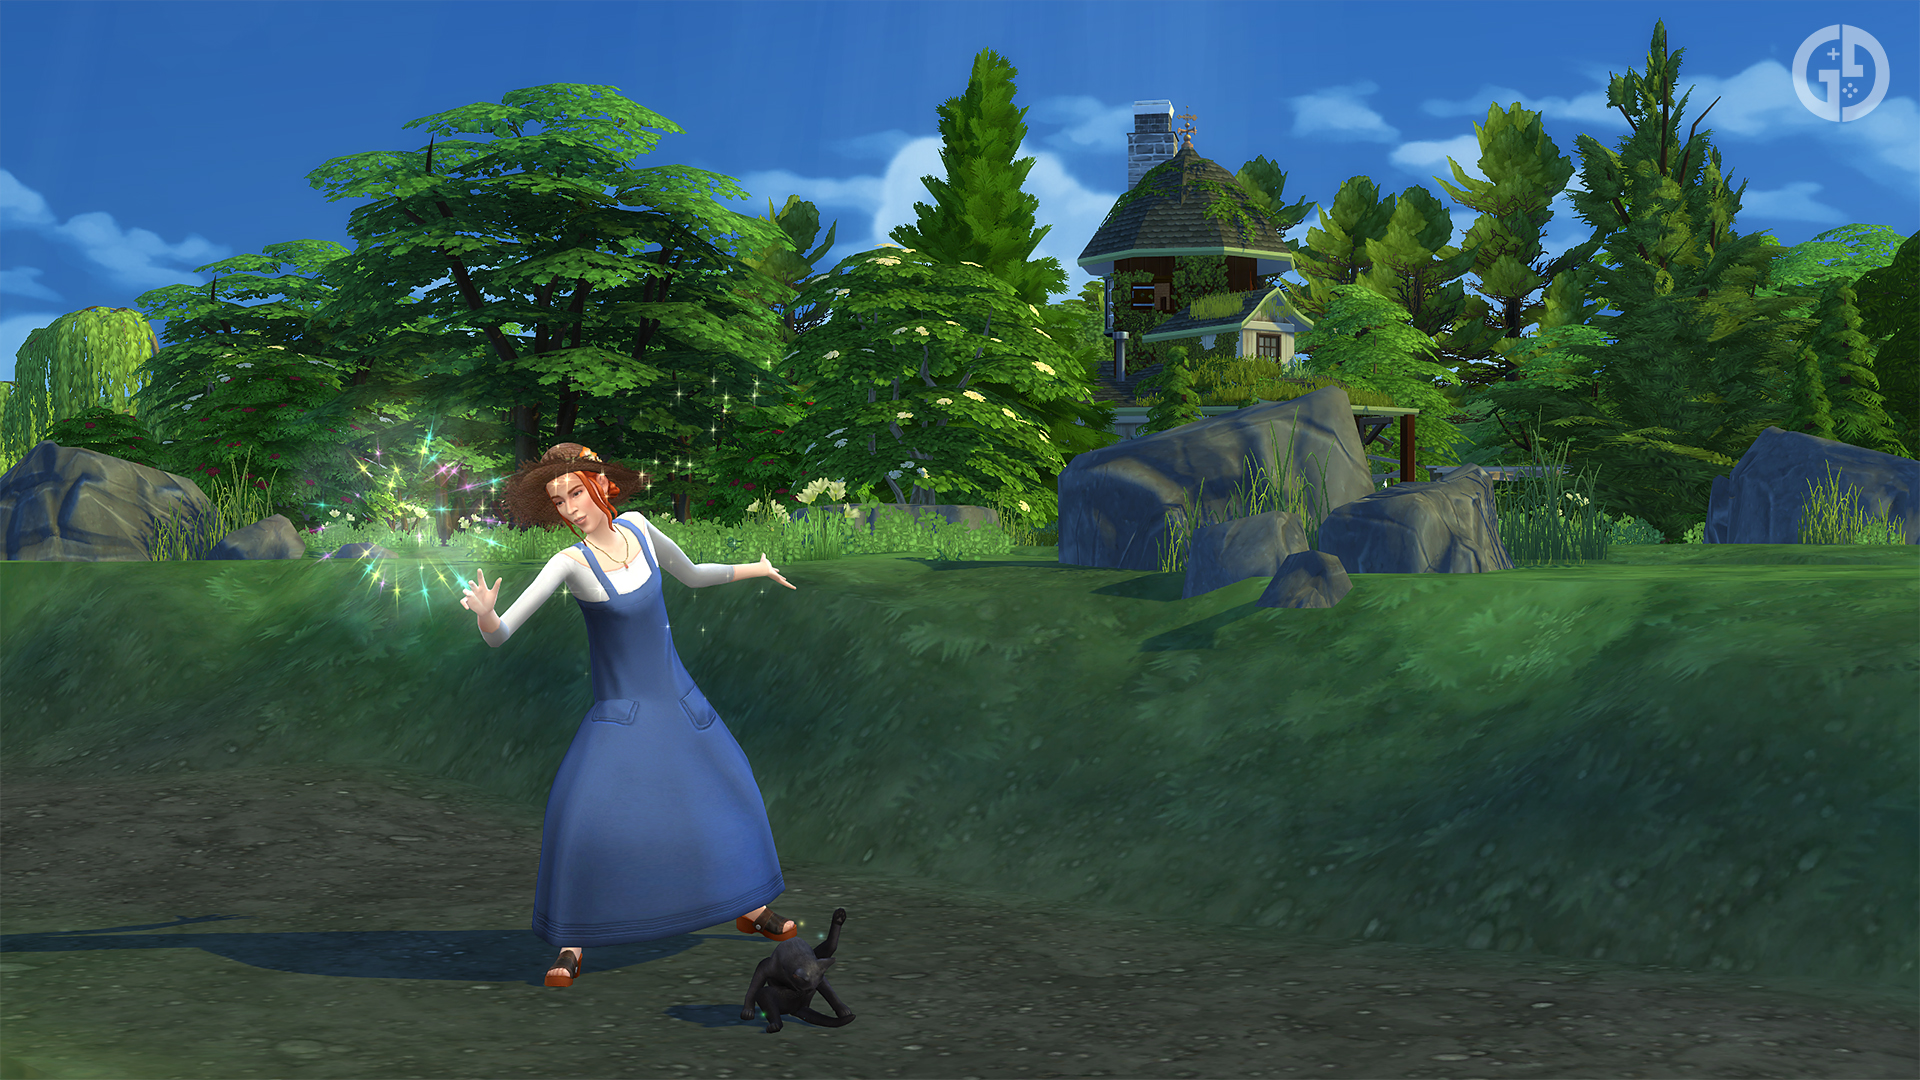 Читы The Sims 4 Spellcaster для Realm of Magic, включая очки талантов